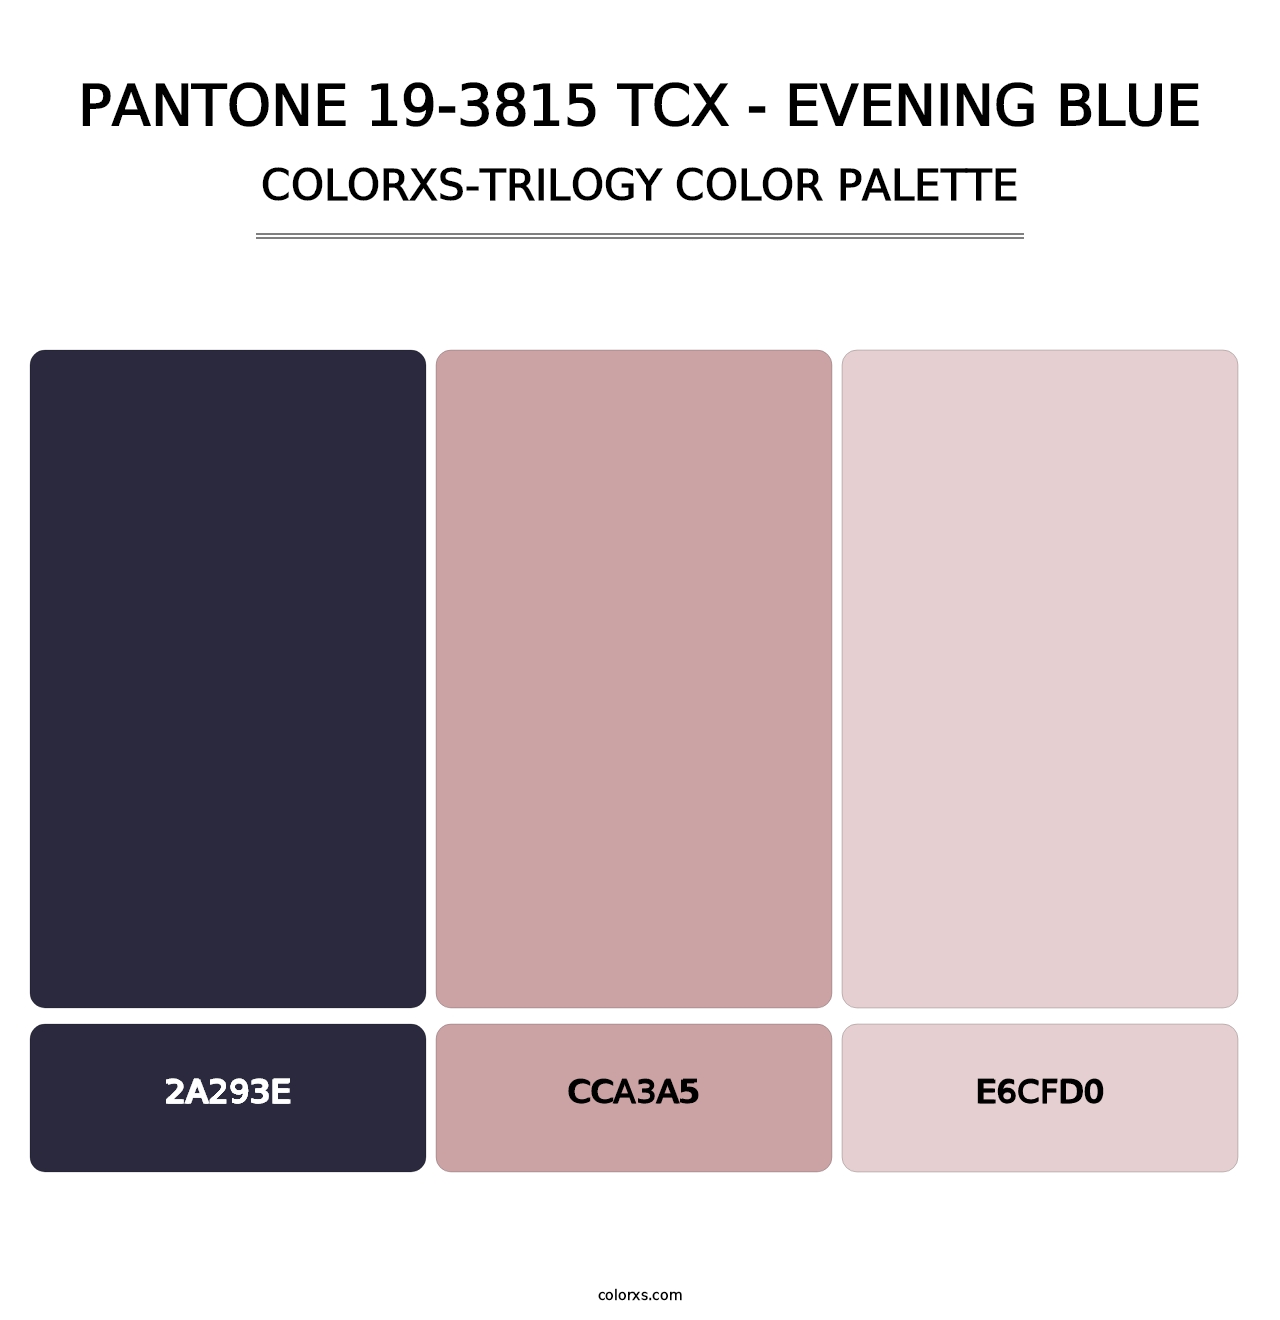 PANTONE 19-3815 TCX - Evening Blue - Colorxs Trilogy Palette